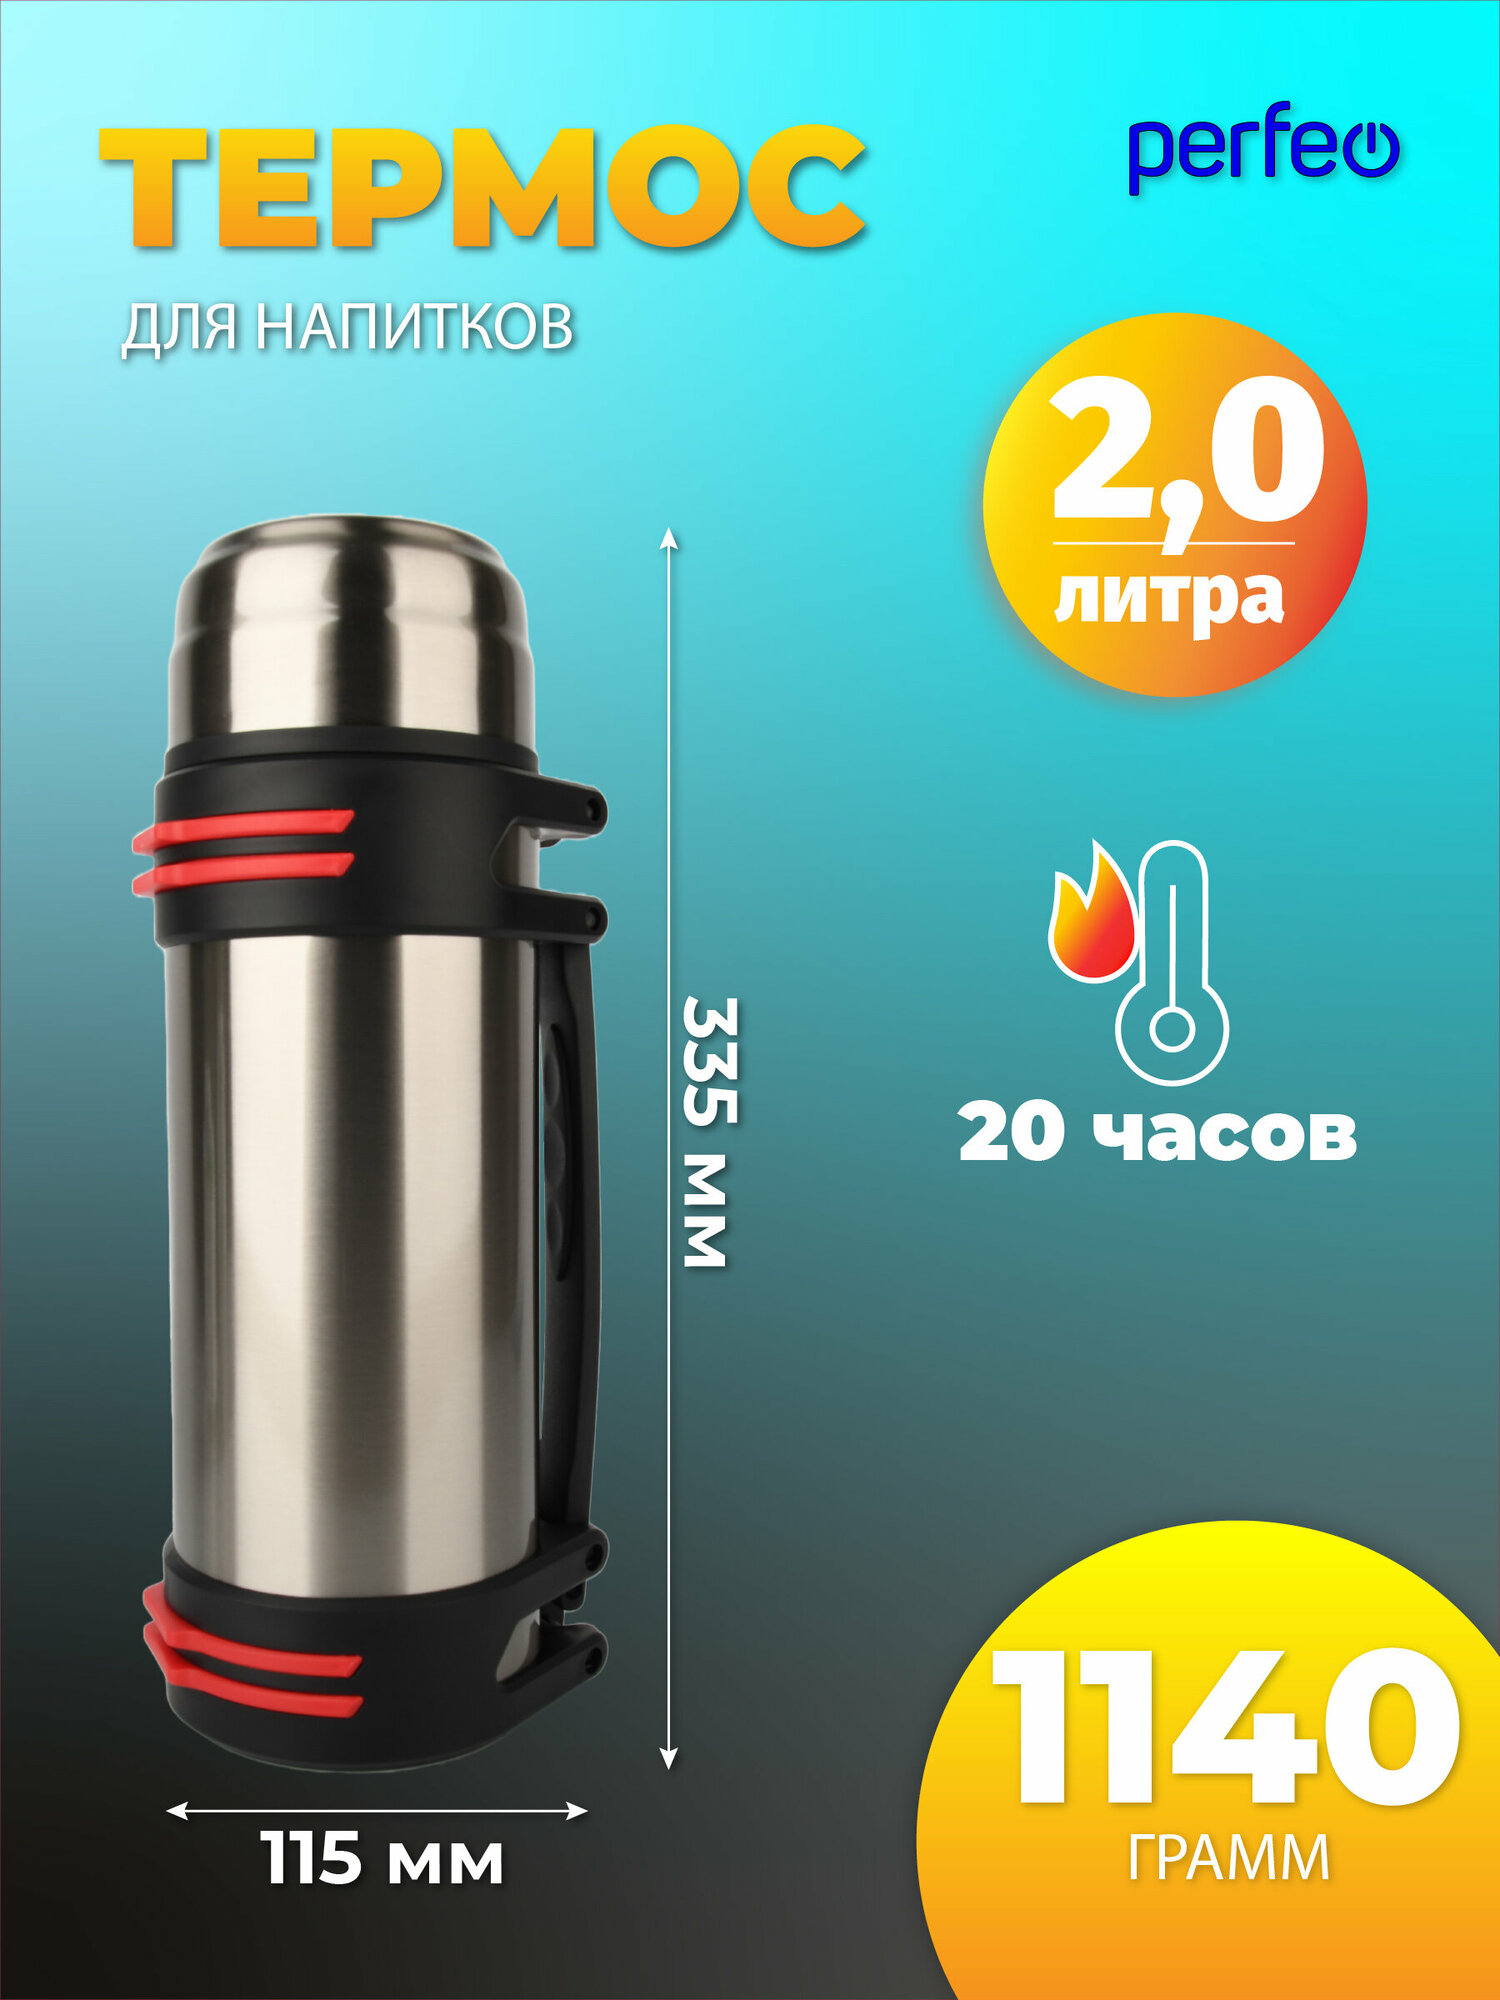 Термос PERFEO для напитков с к/п, ситечком, чашкой, ручкой, ремнем, объем 2 л, н. сталь (PF_E1362)